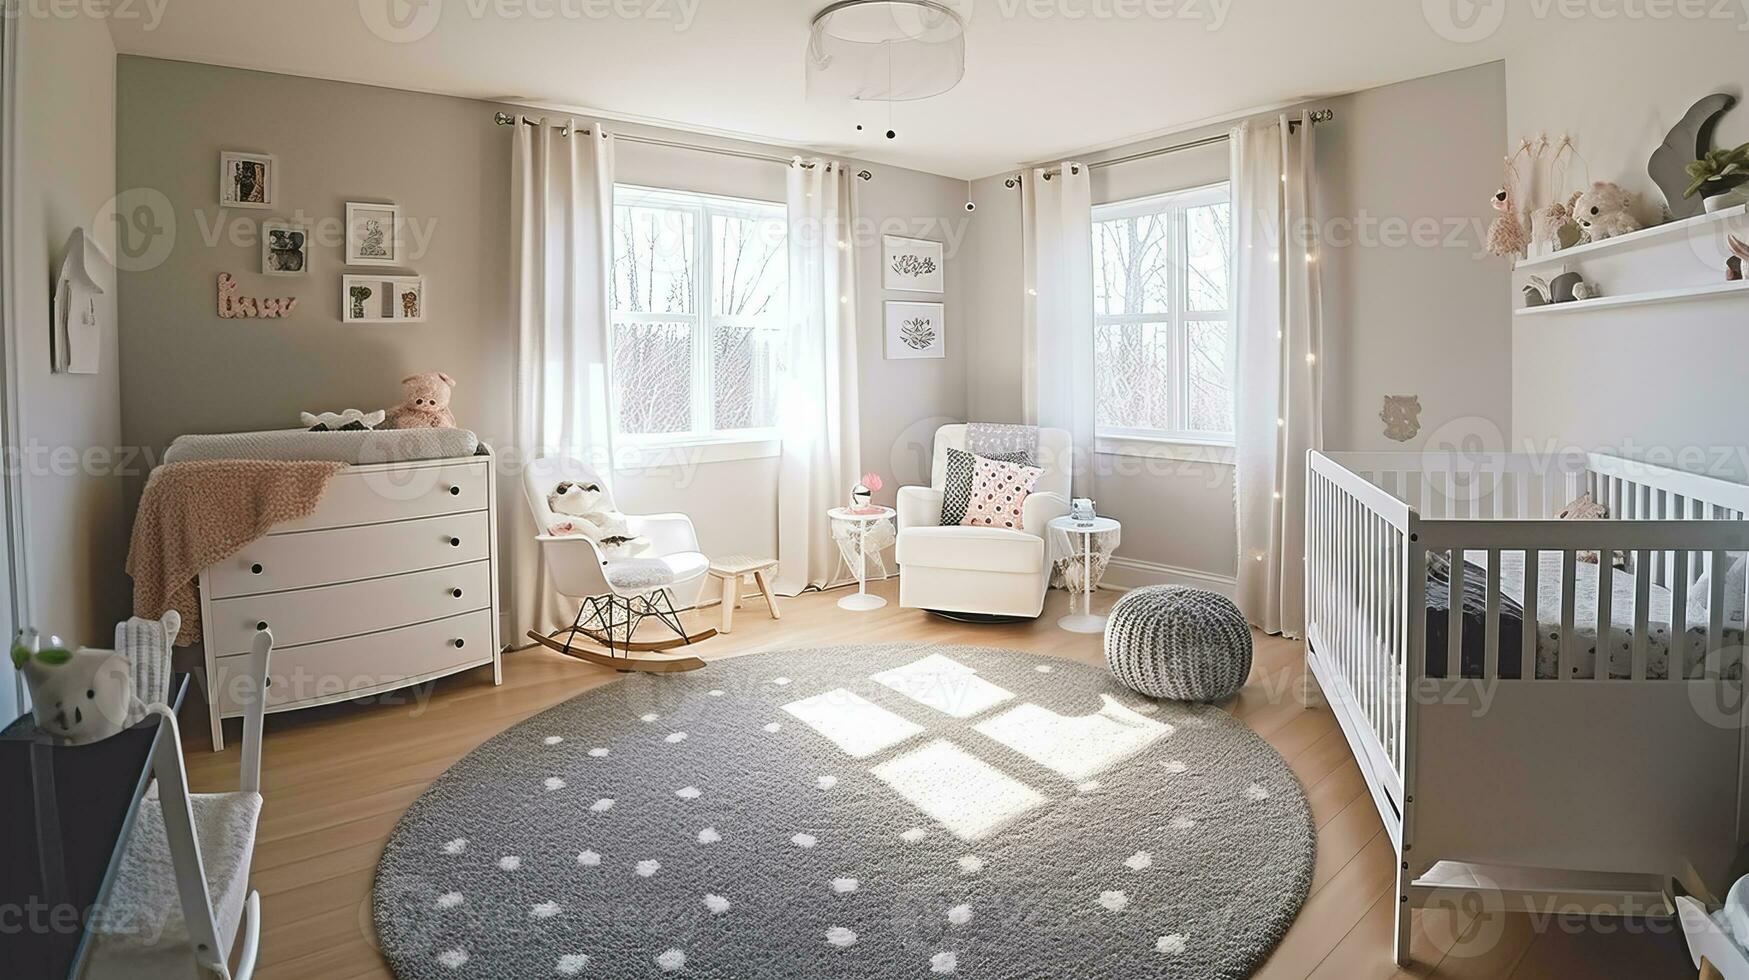 das Kindergarten Zimmer von ein schön hell modern Stil Haus. ai generiert. foto